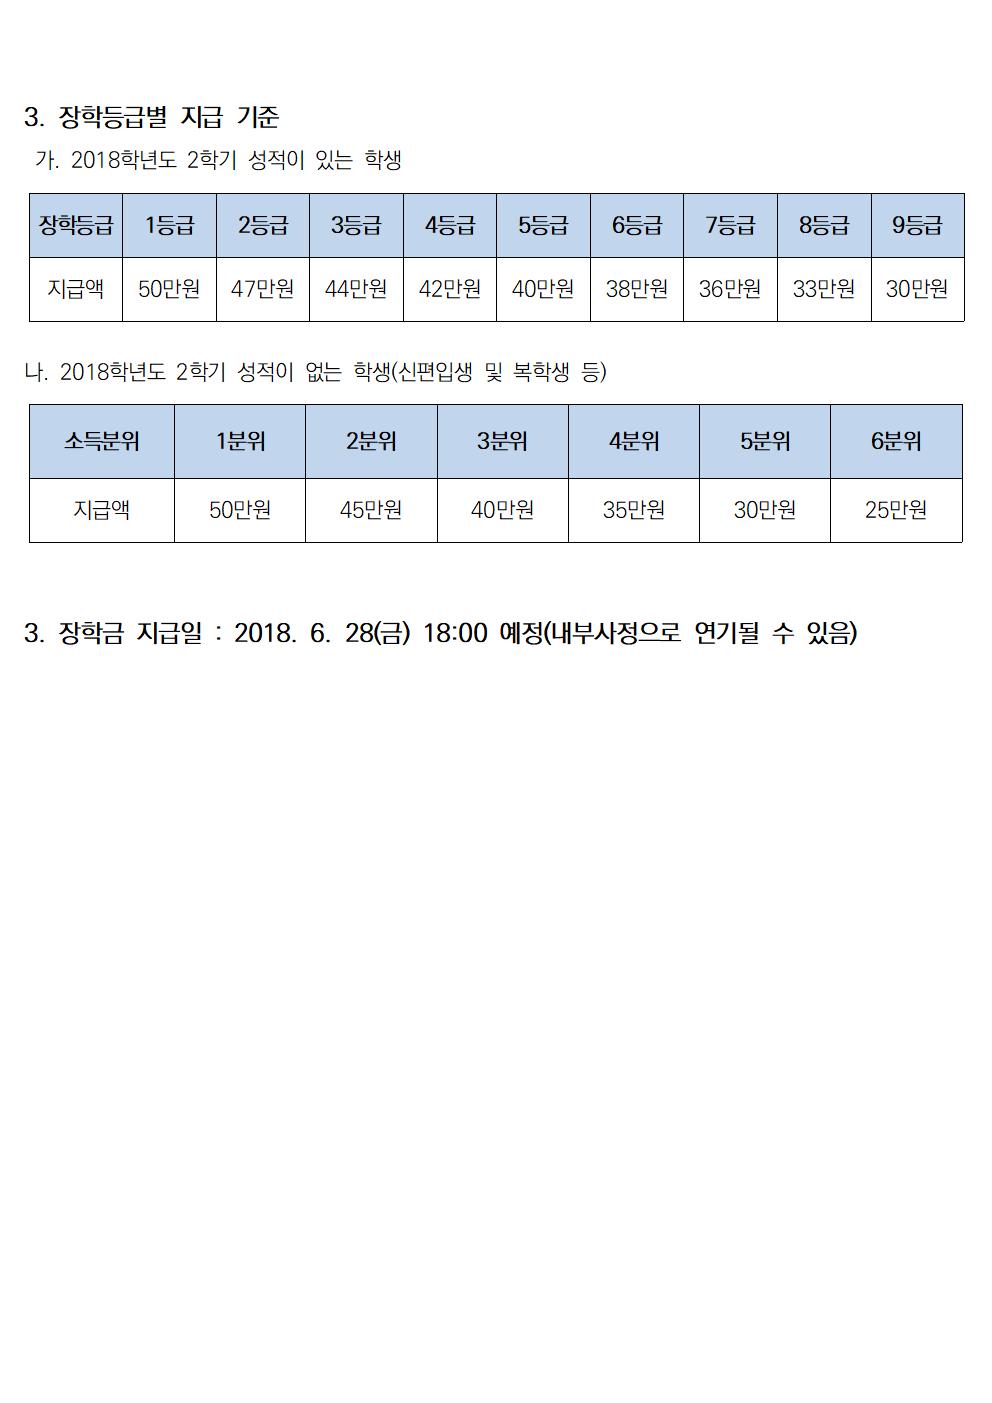 2019-1 국가장학금 2유형 장학금 선발기준 안내